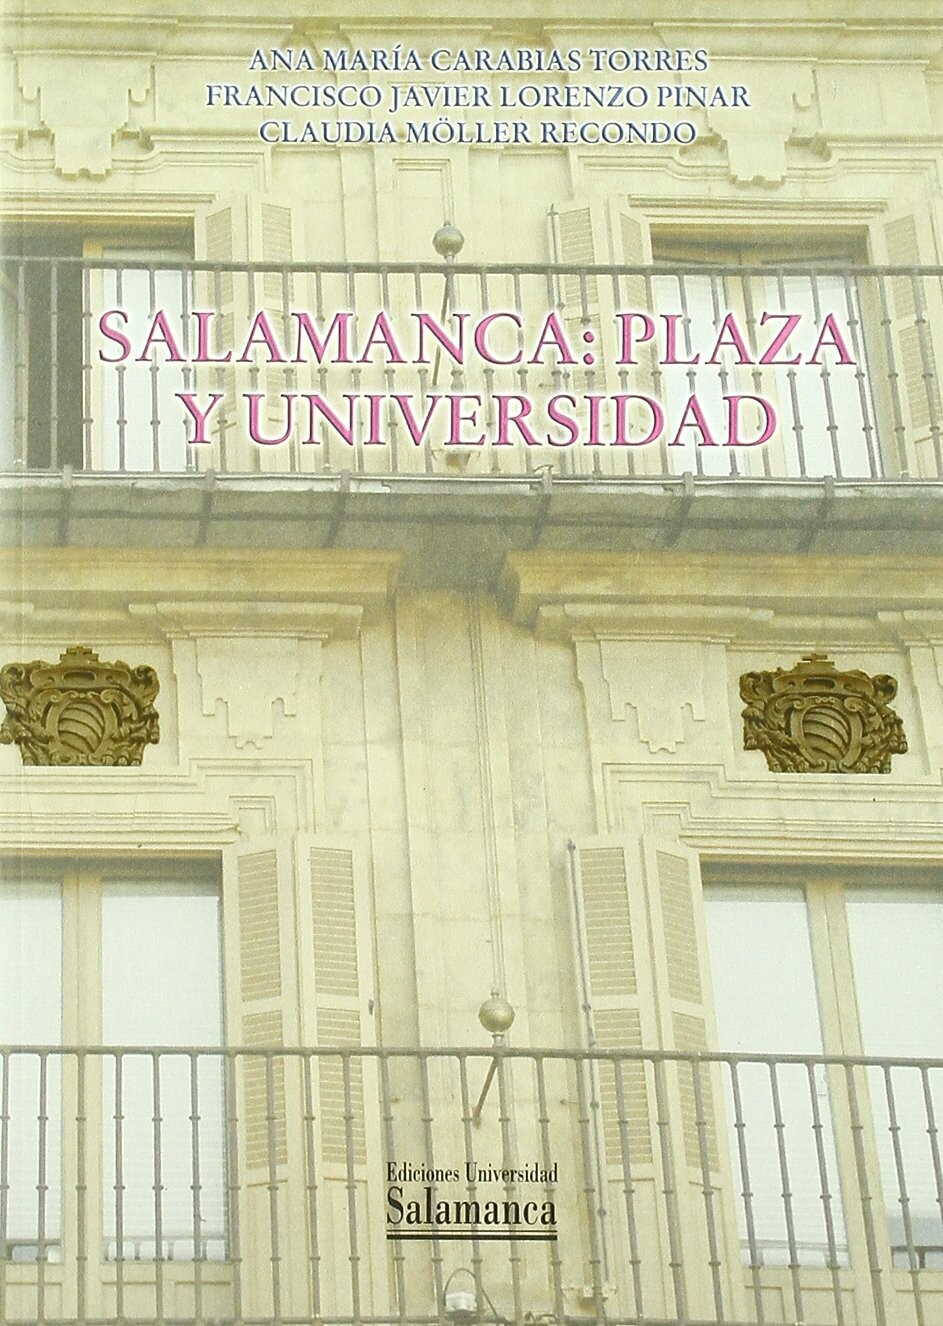 Salamanca: Plaza y Universidad